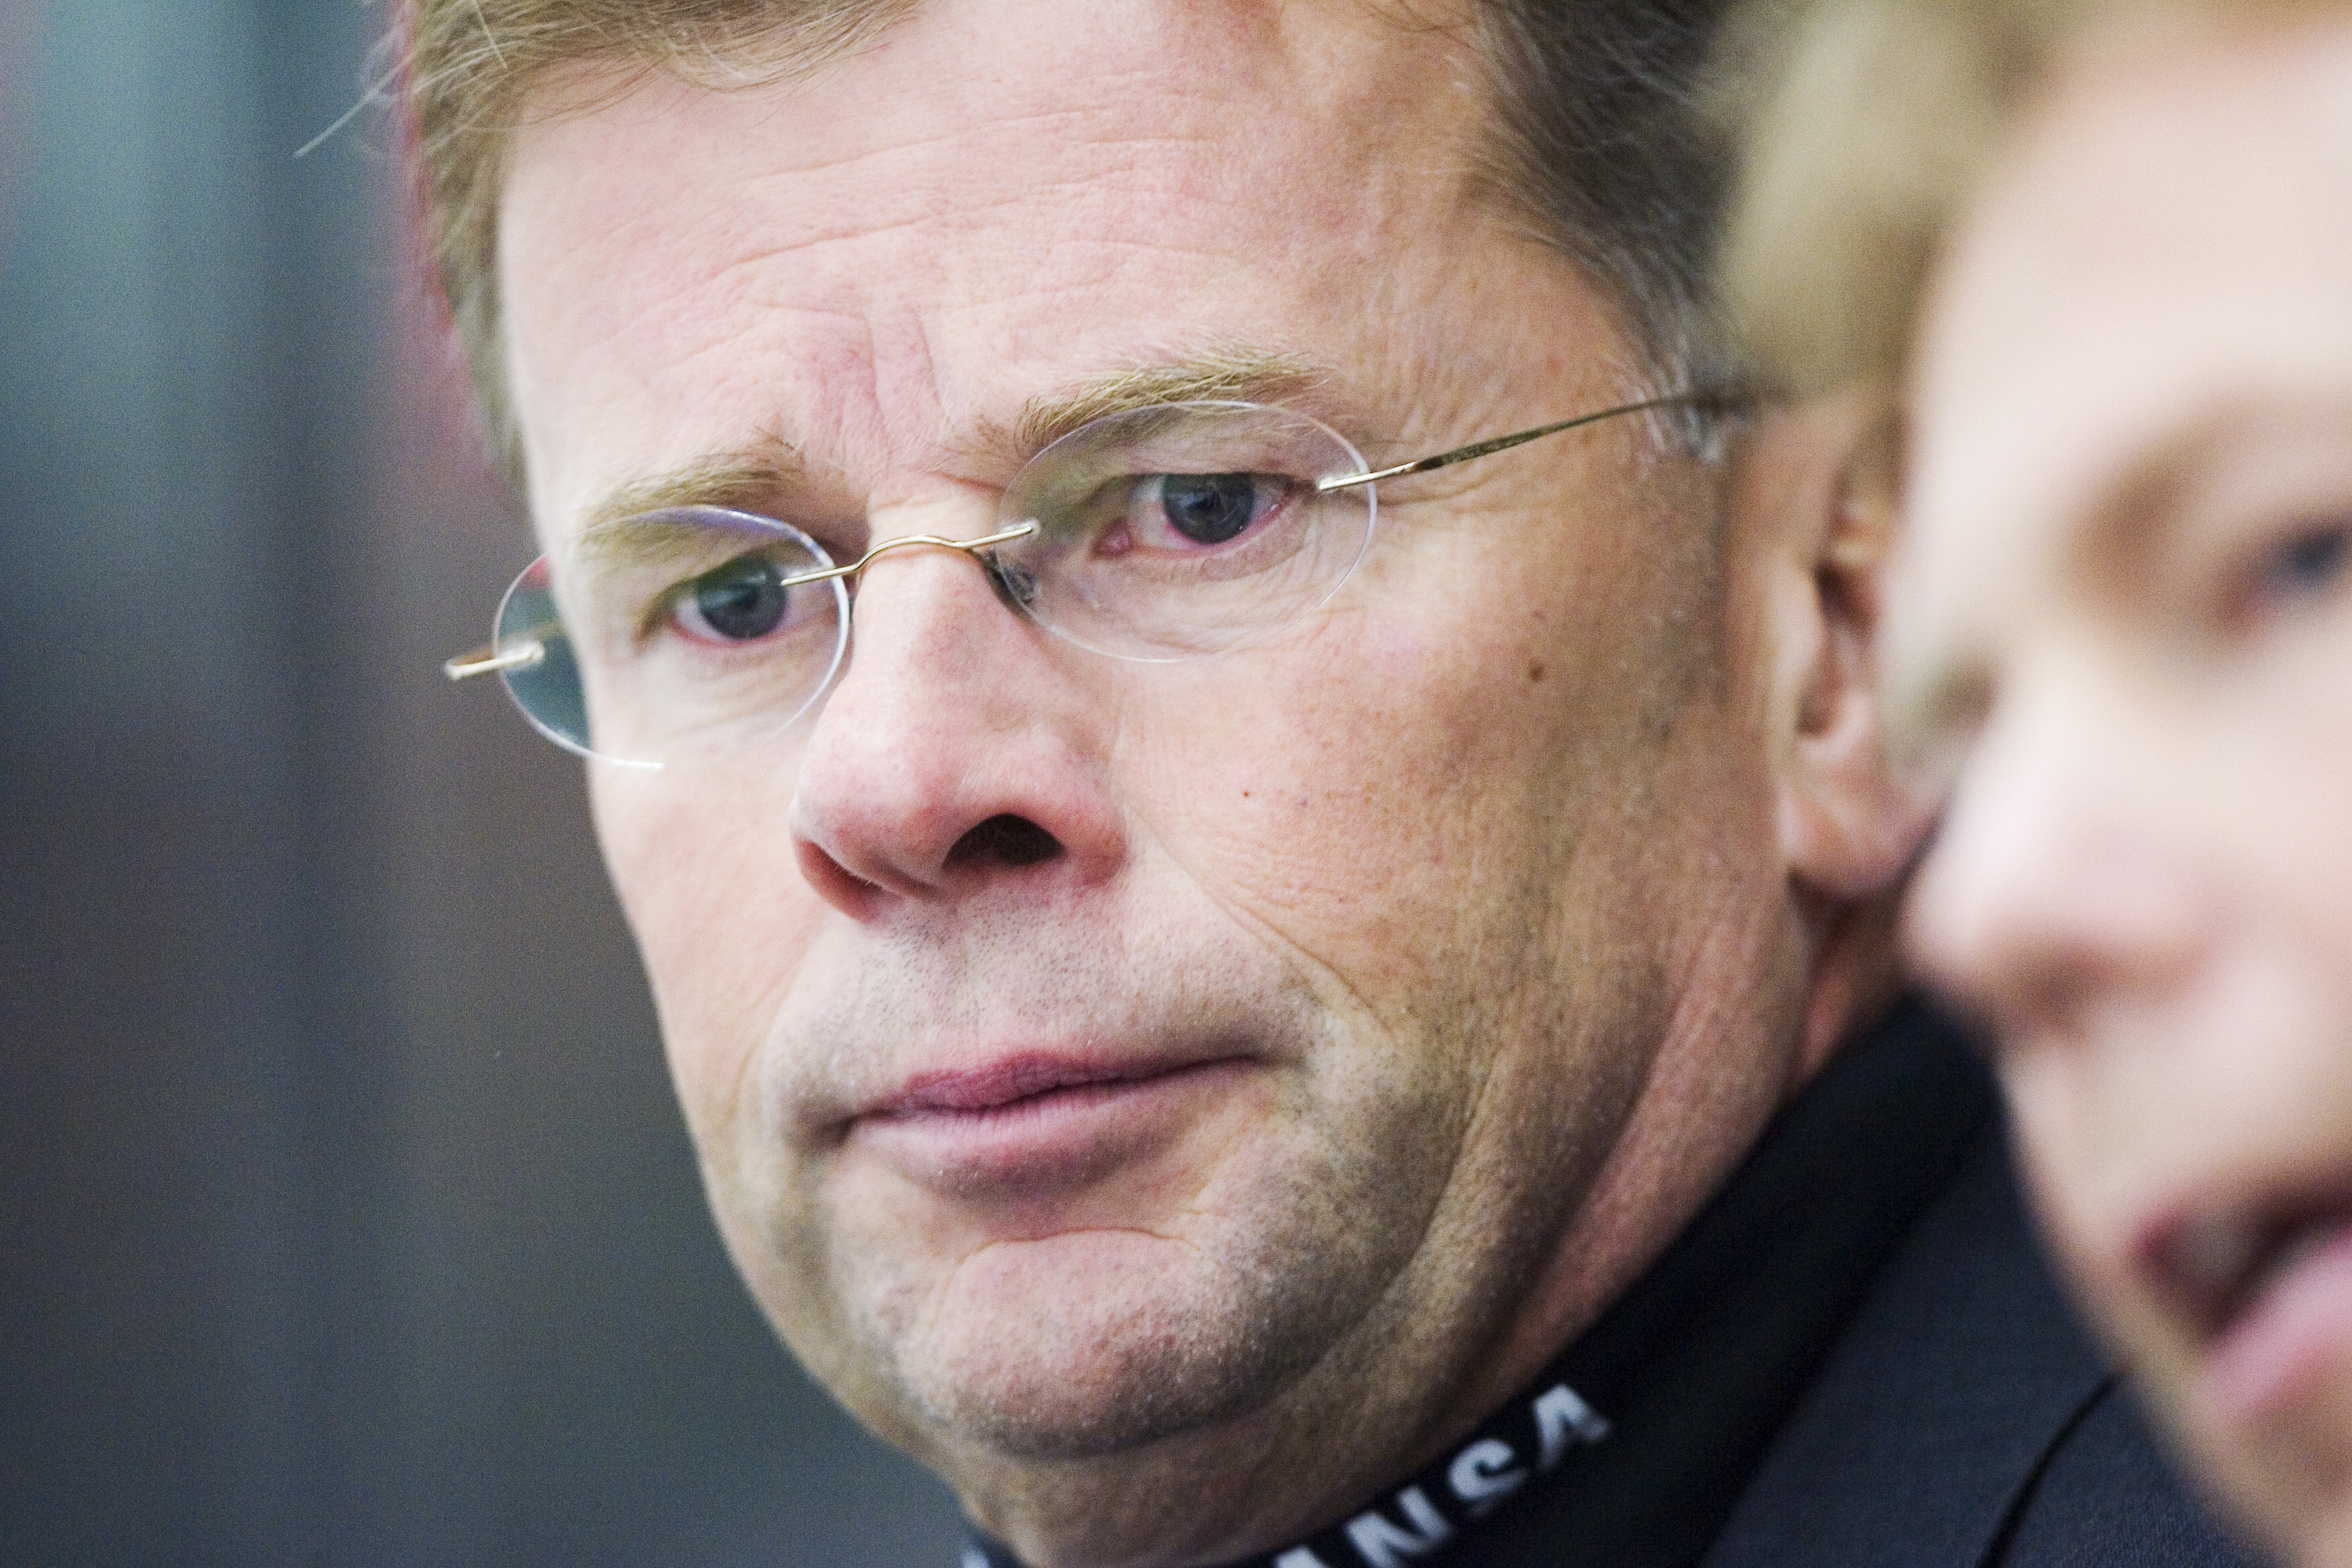 Luleås sportchef Lars "Osten" Bergström är polisanmäld för hets mot folkgrupp - av polisen själv.